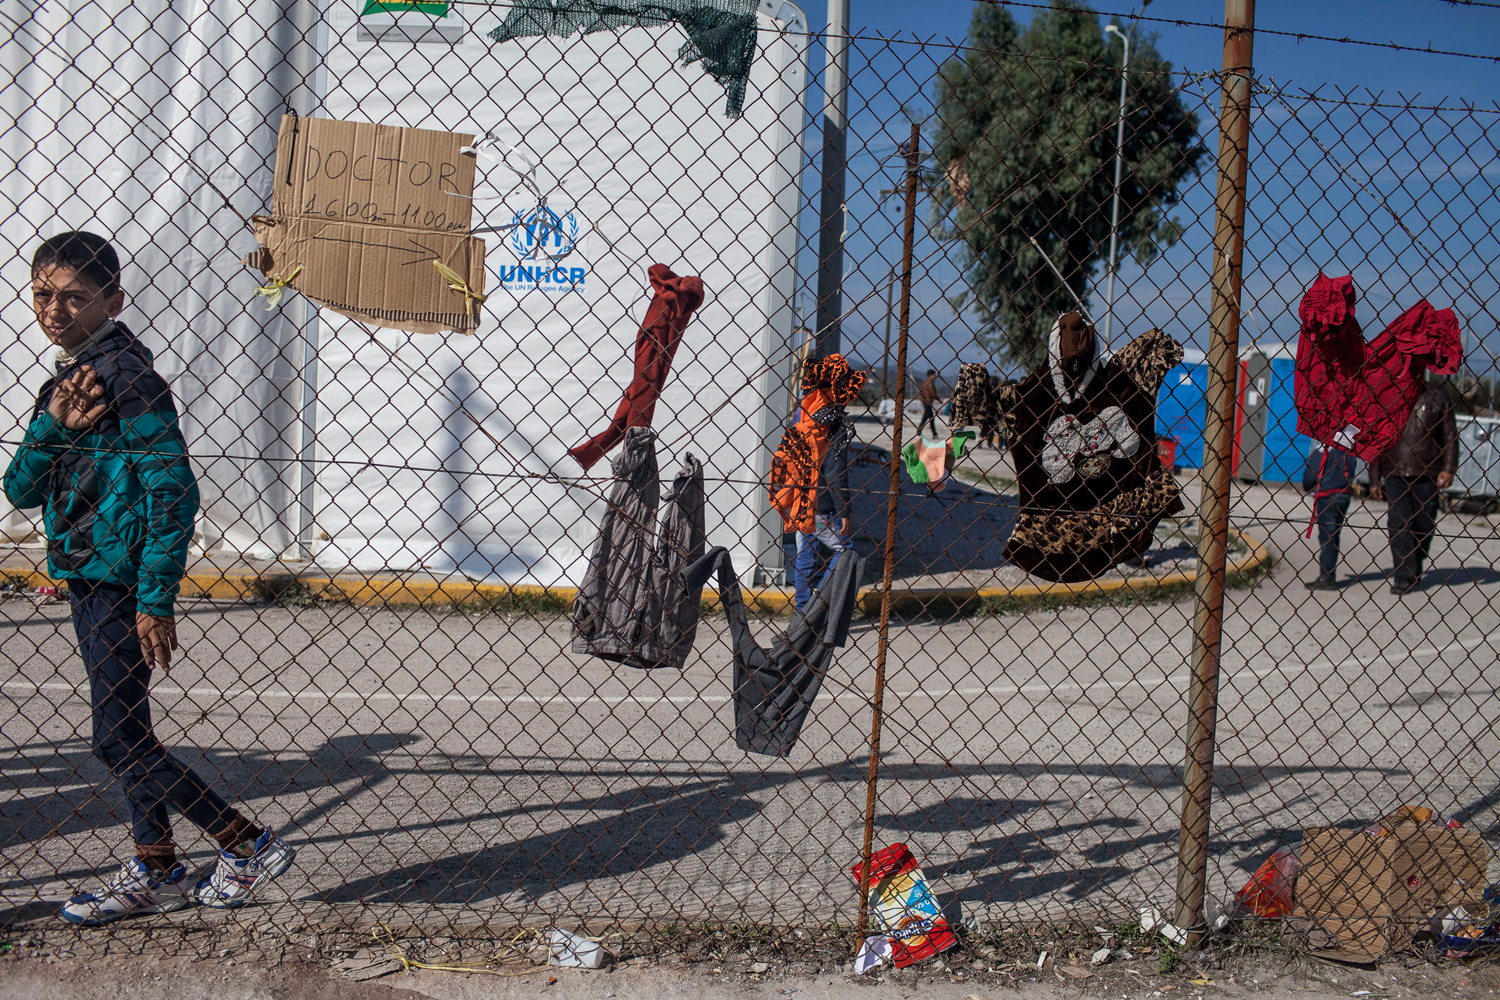  Prisioneros en Grecia, Sirios intentan volver a casa